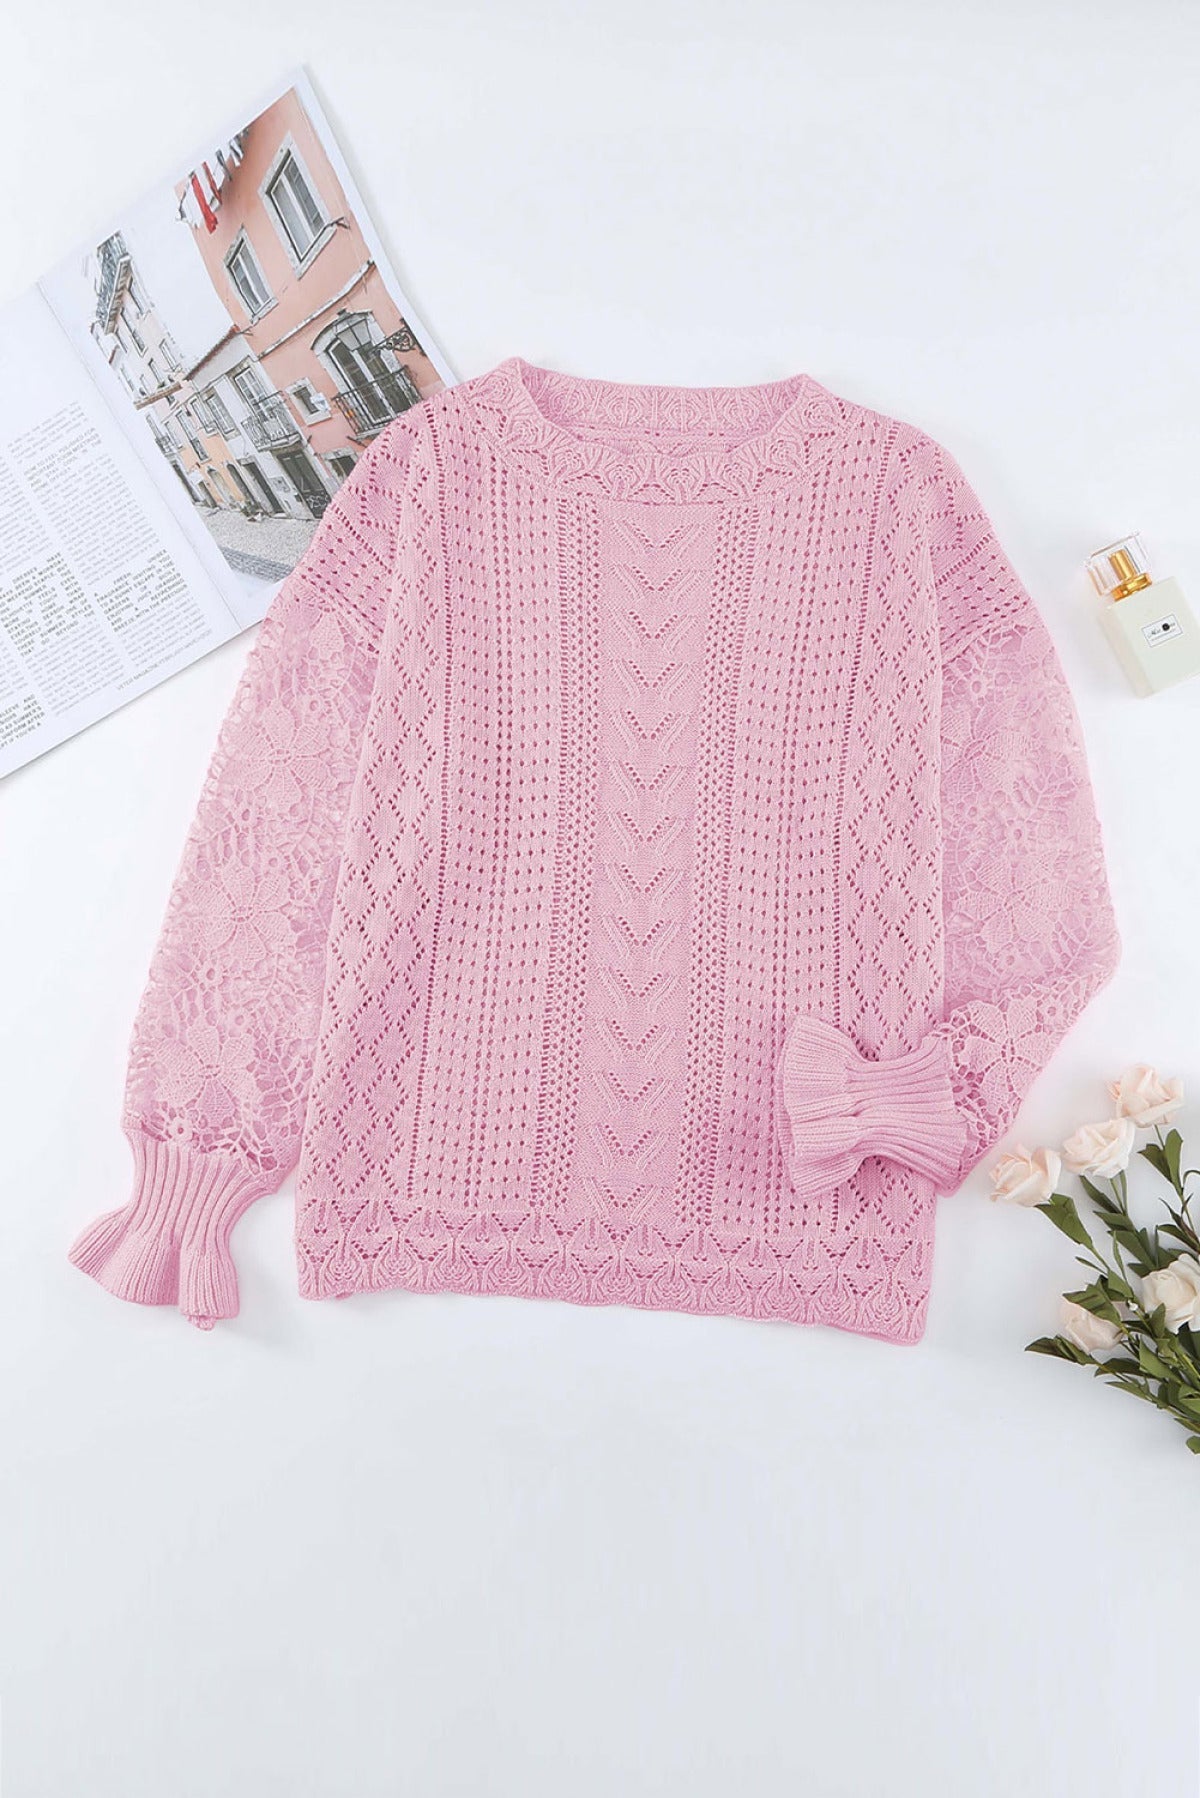 Romantasy Lace Sweater